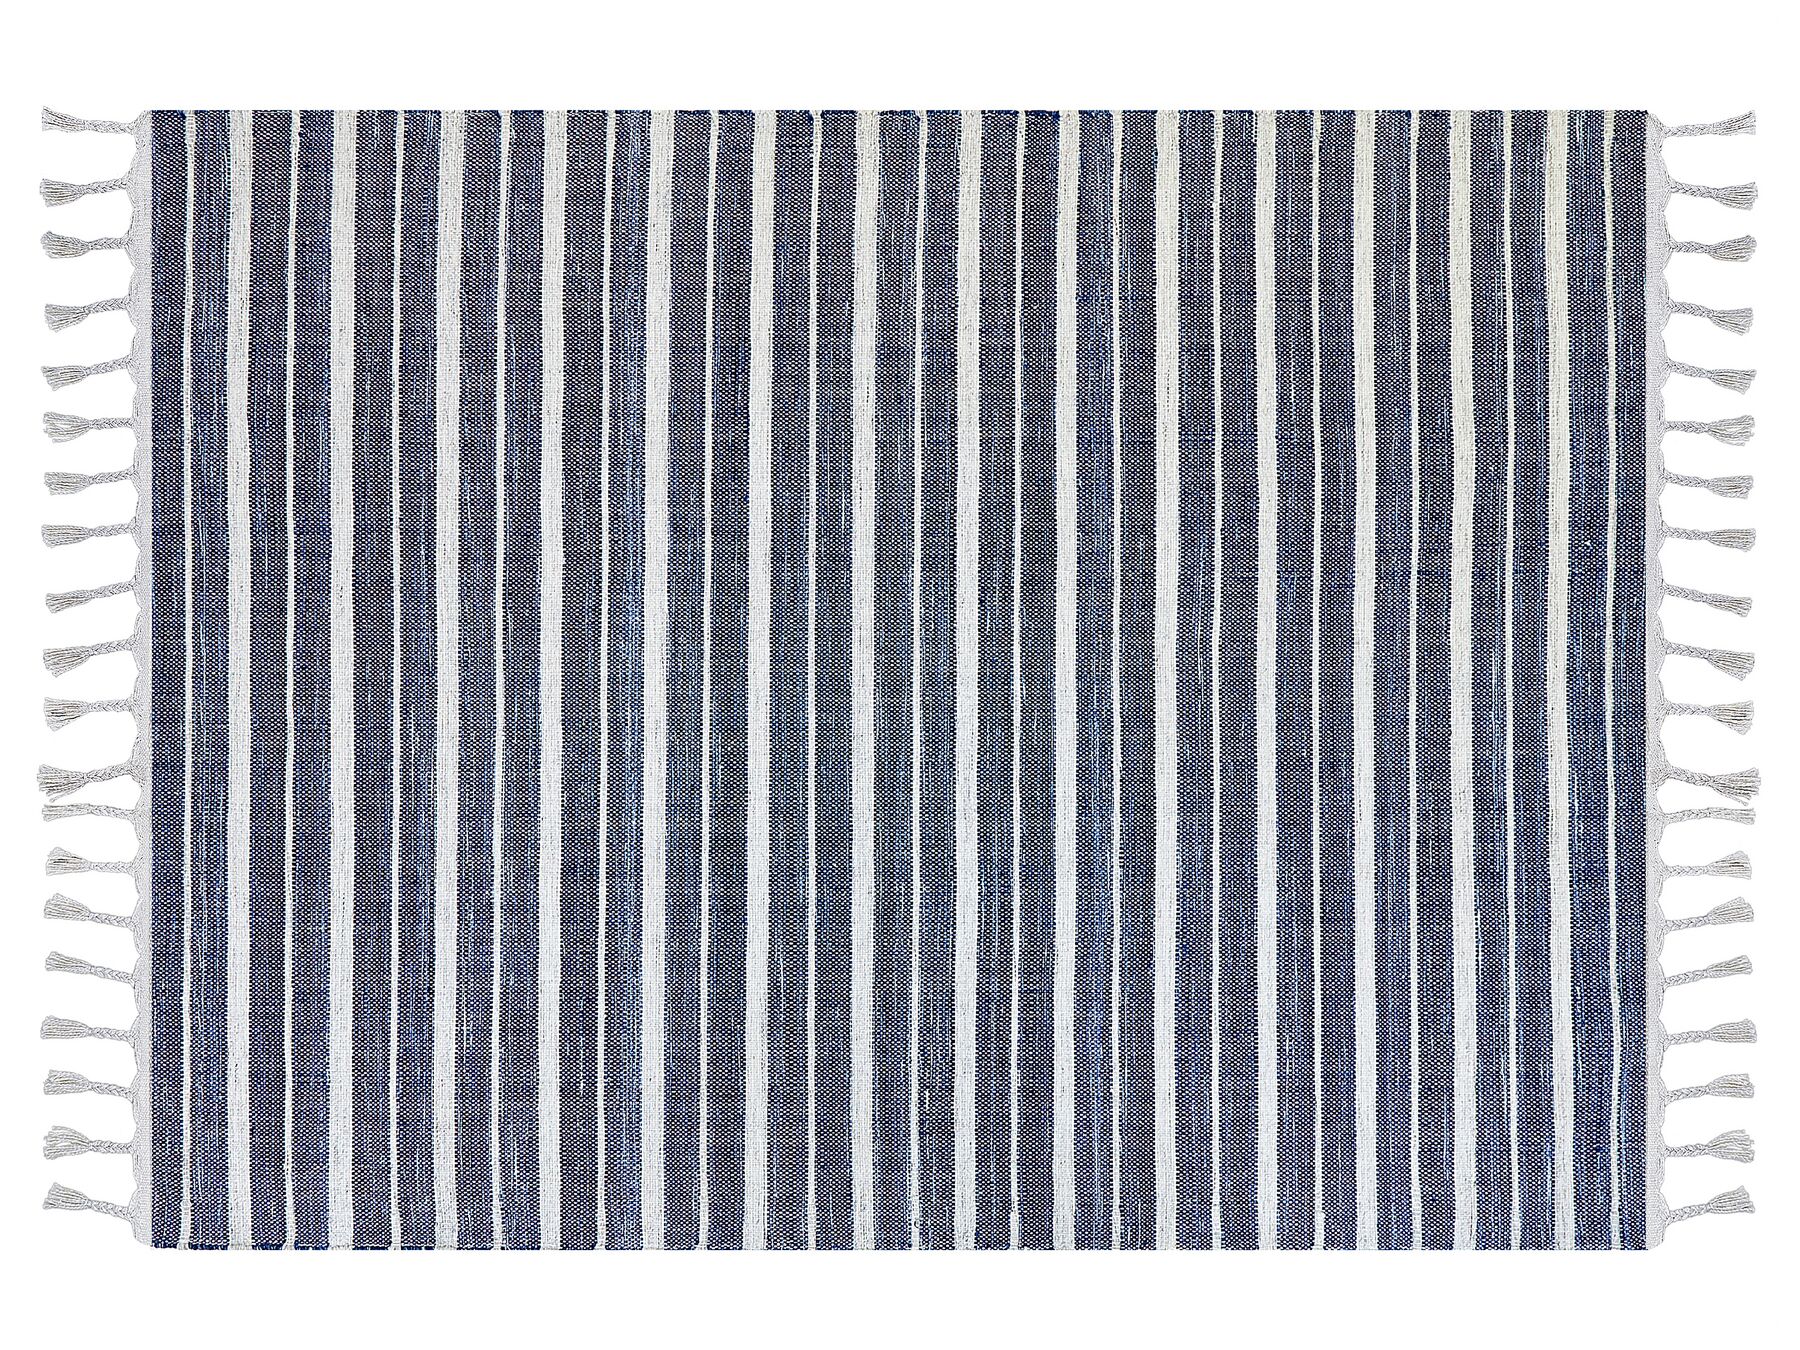 Outdoor Teppich dunkelblau / weiss 140 x 200 cm Streifenmuster Kurzflor BADEMLI_846569